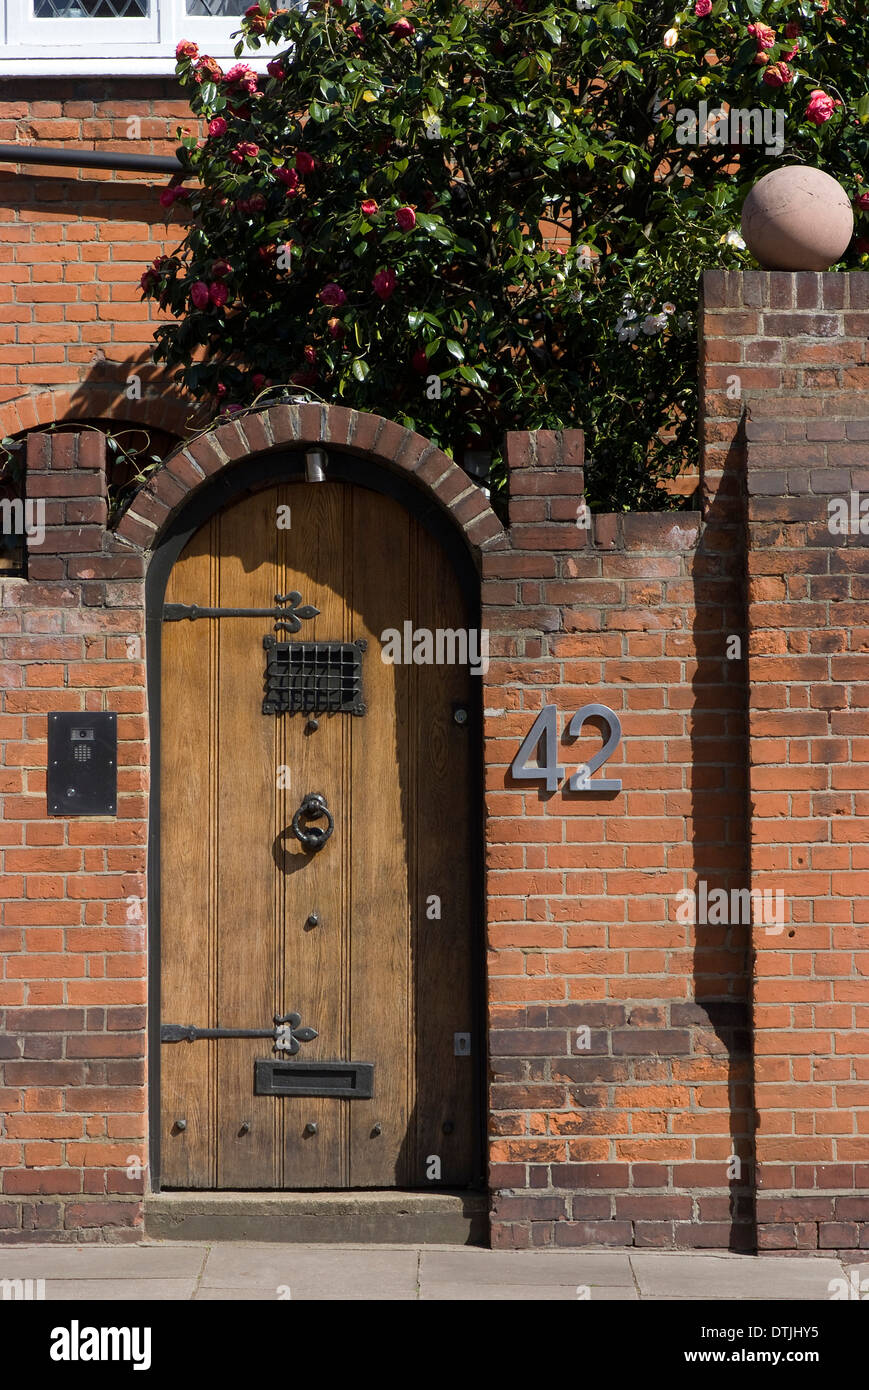 Porte en bois dans une maison en brique, St John's Wood, Londres, Angleterre, SW8 Banque D'Images